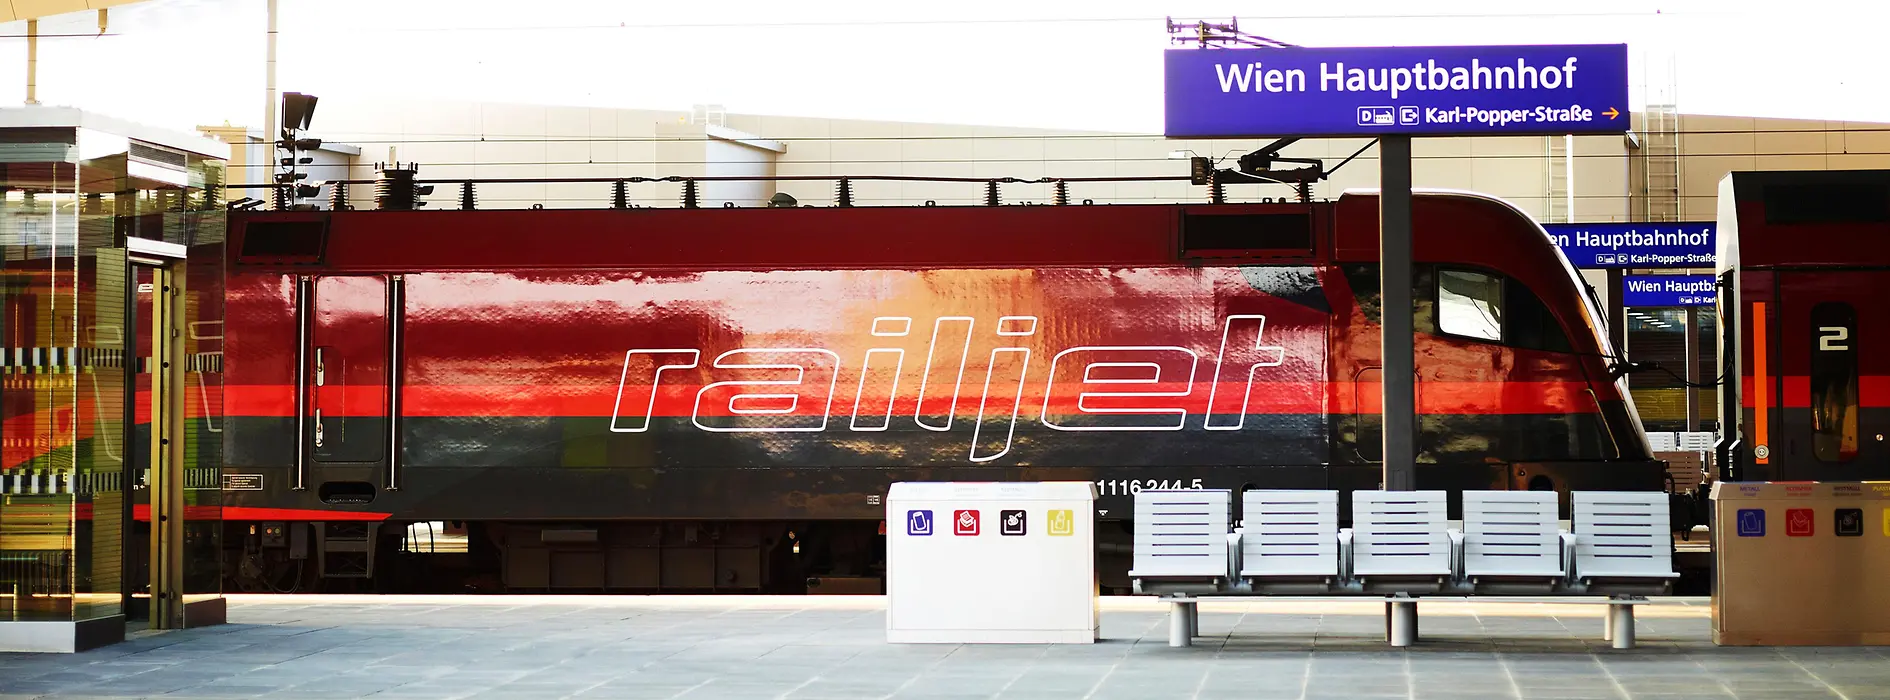 ÖBB Railjet-Zug am Bahnsteig Wien Hauptbahnhof